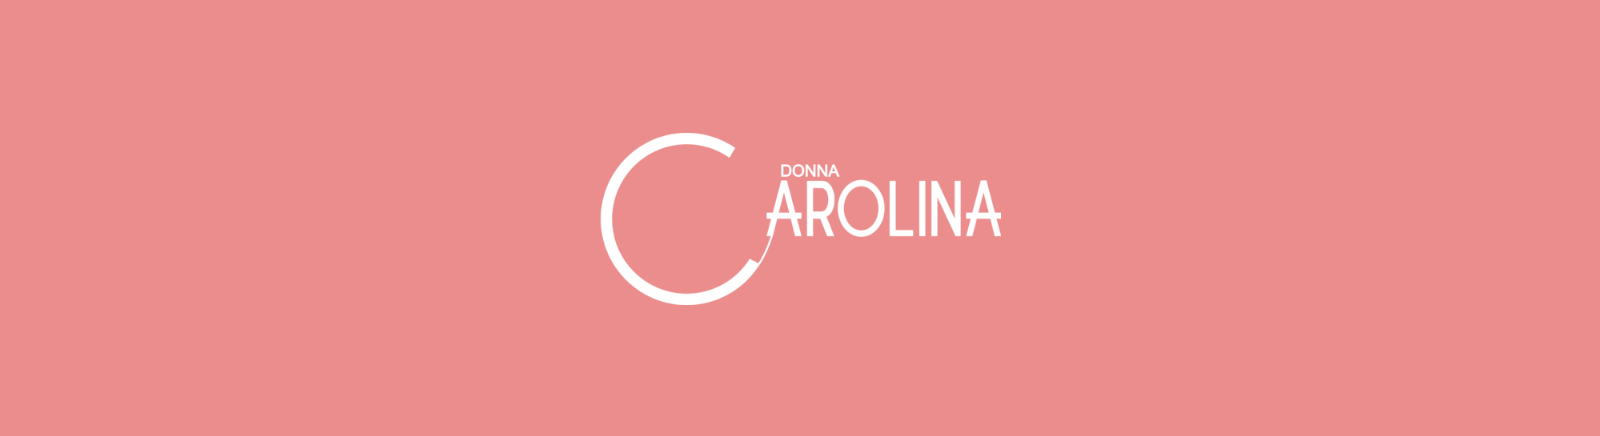 Prange: Donna Carolina Boots für Damen online kaufen online shoppen